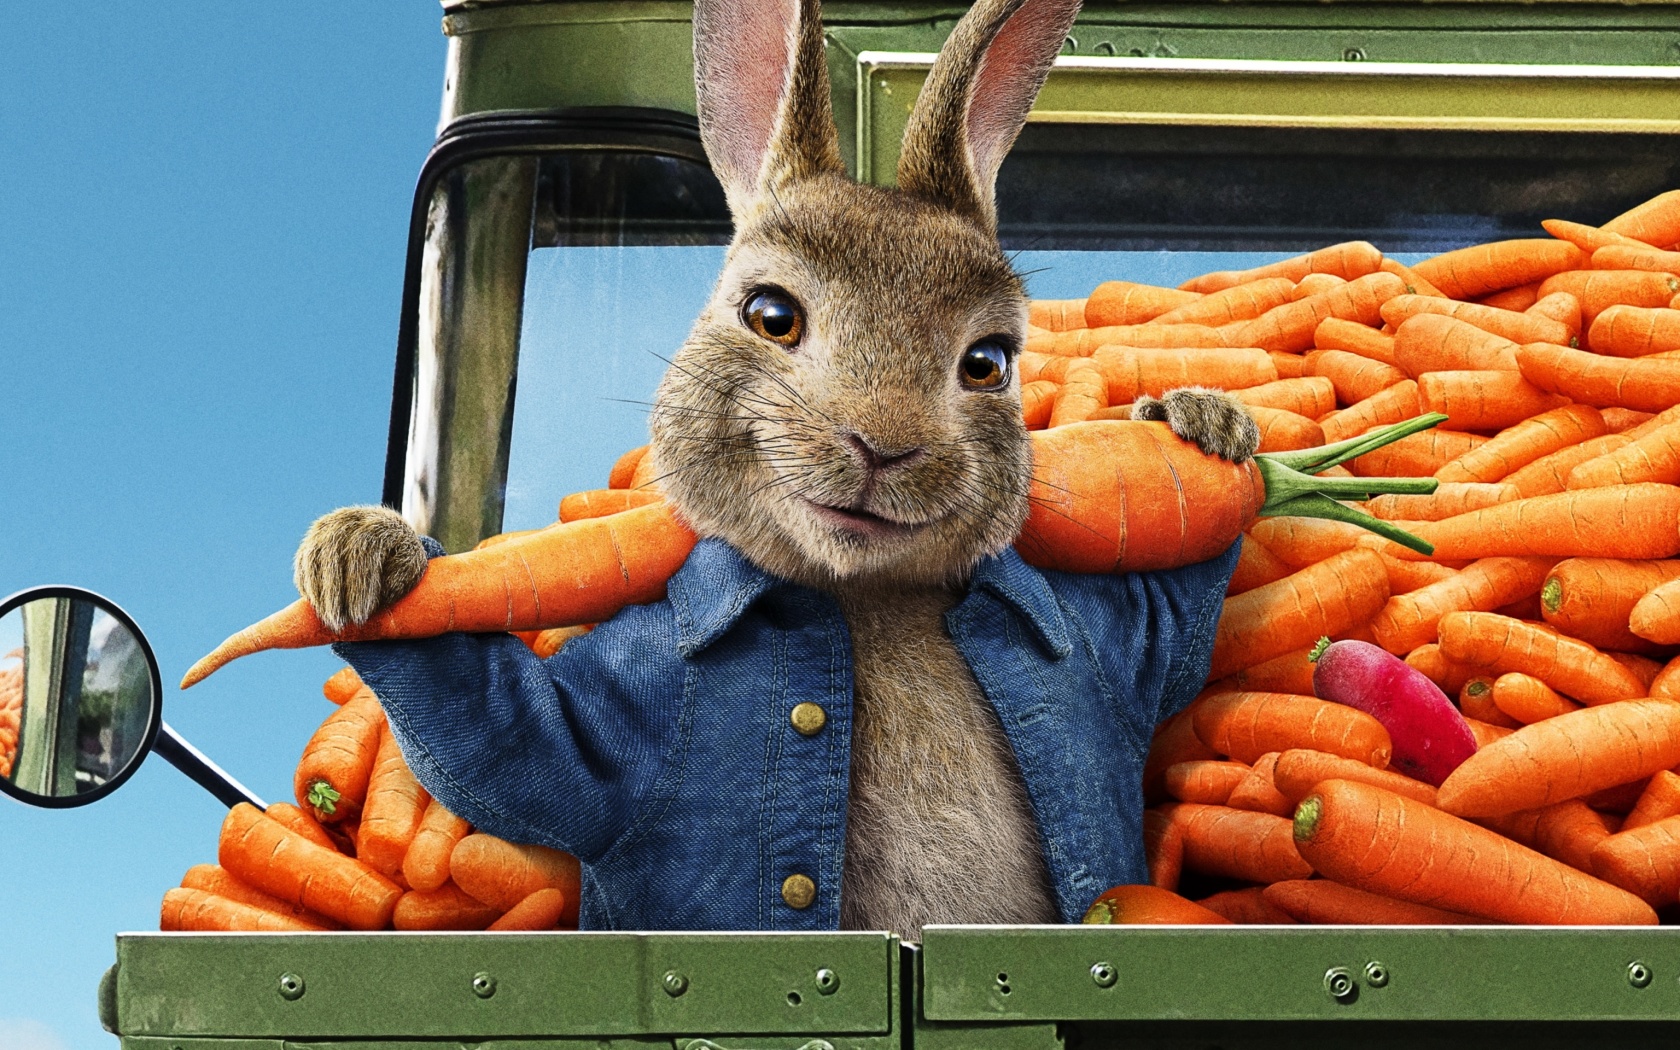 Peter Rabbit 2 The Runaway 2020 wallpaper 1680x1050